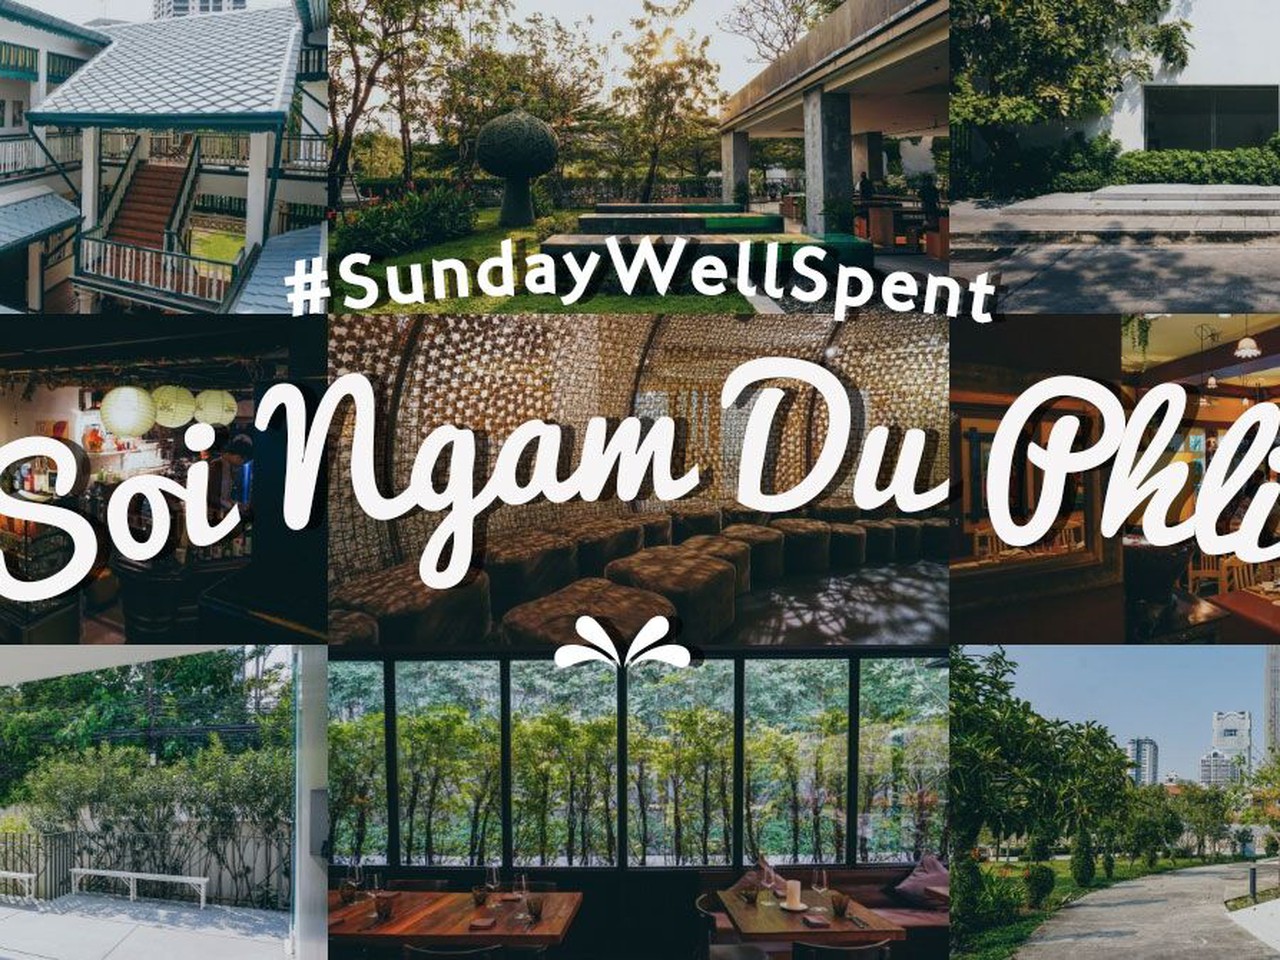 เที่ยวครบจบซอยใน 1 วันกับ #SundayWellSpent ซอยงามดูพลี! | Siam2nite